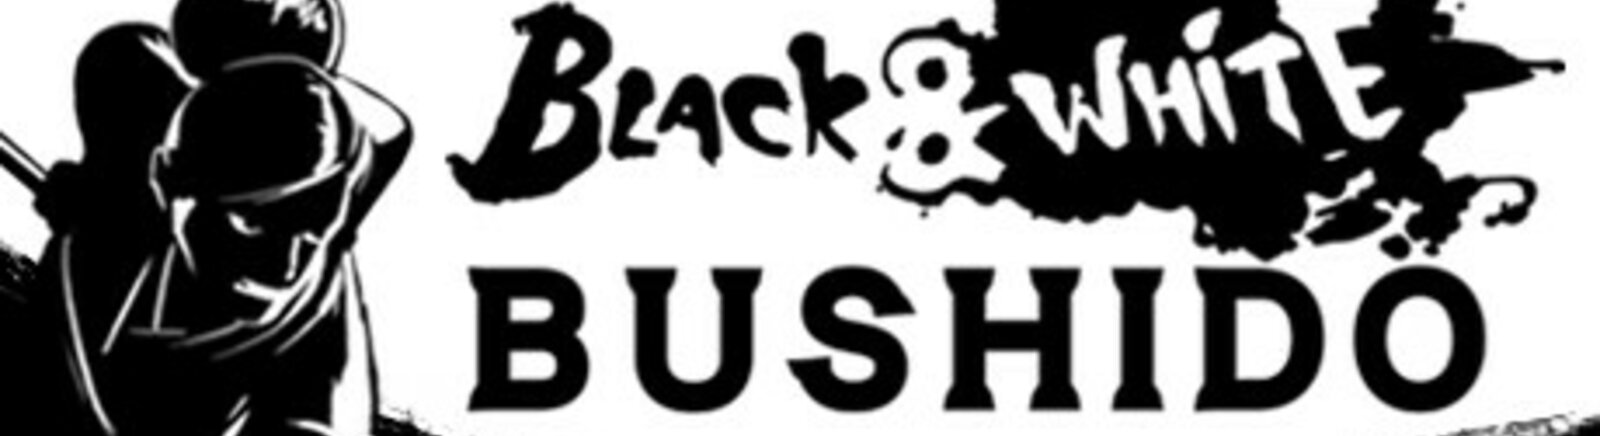 Дата выхода Black & White Bushido (Black and White Bushido)  на PC, PS4 и Xbox One в России и во всем мире